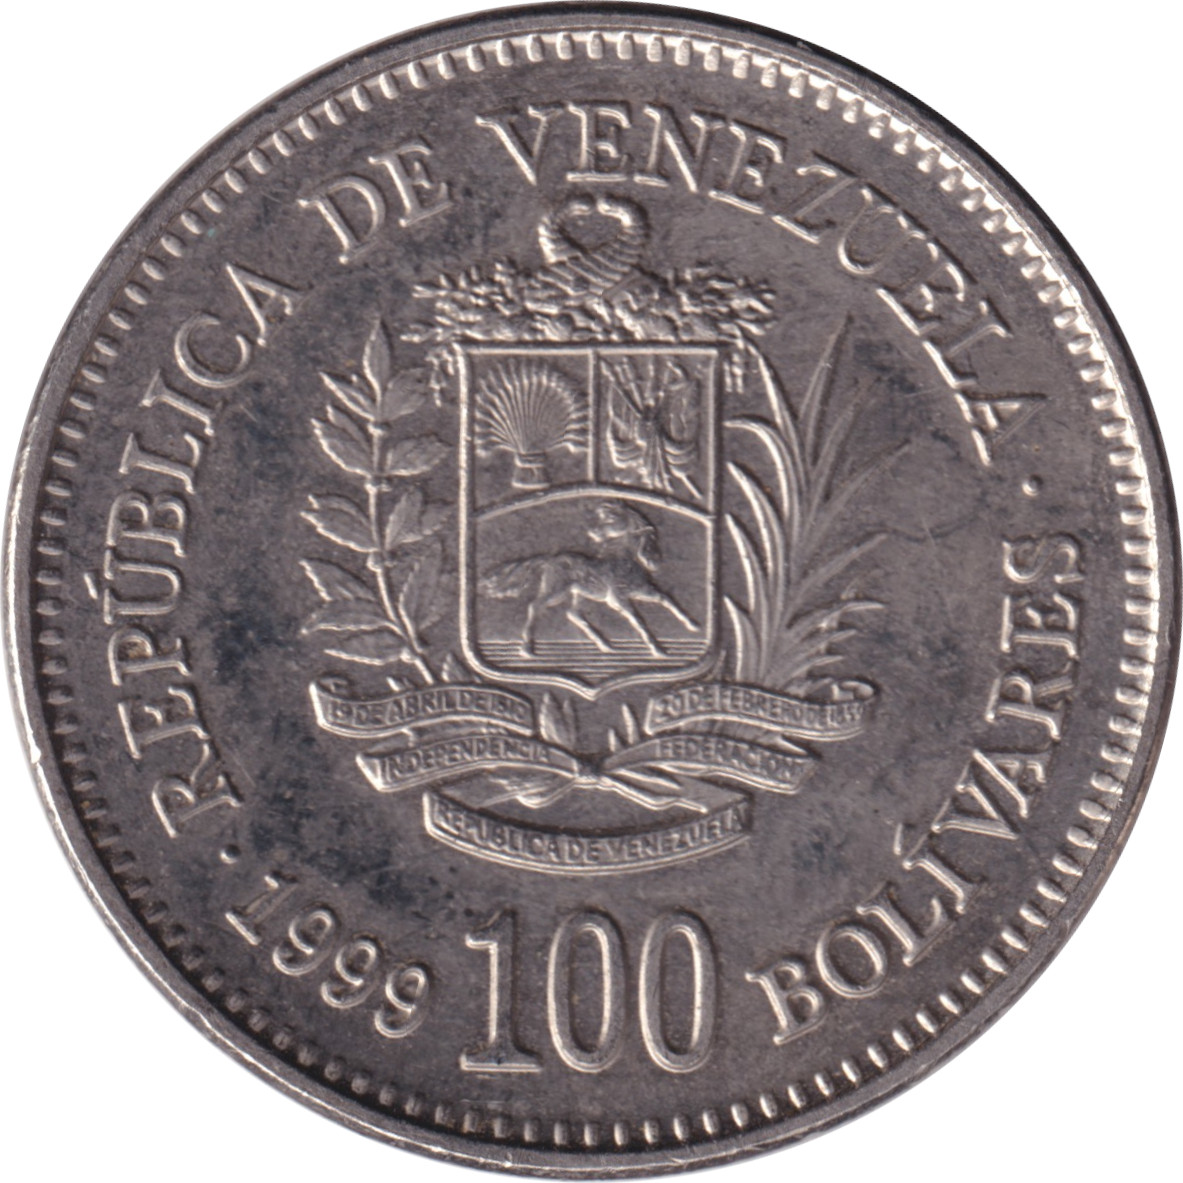 100 bolivares - Simon Bolivar - Grand blason